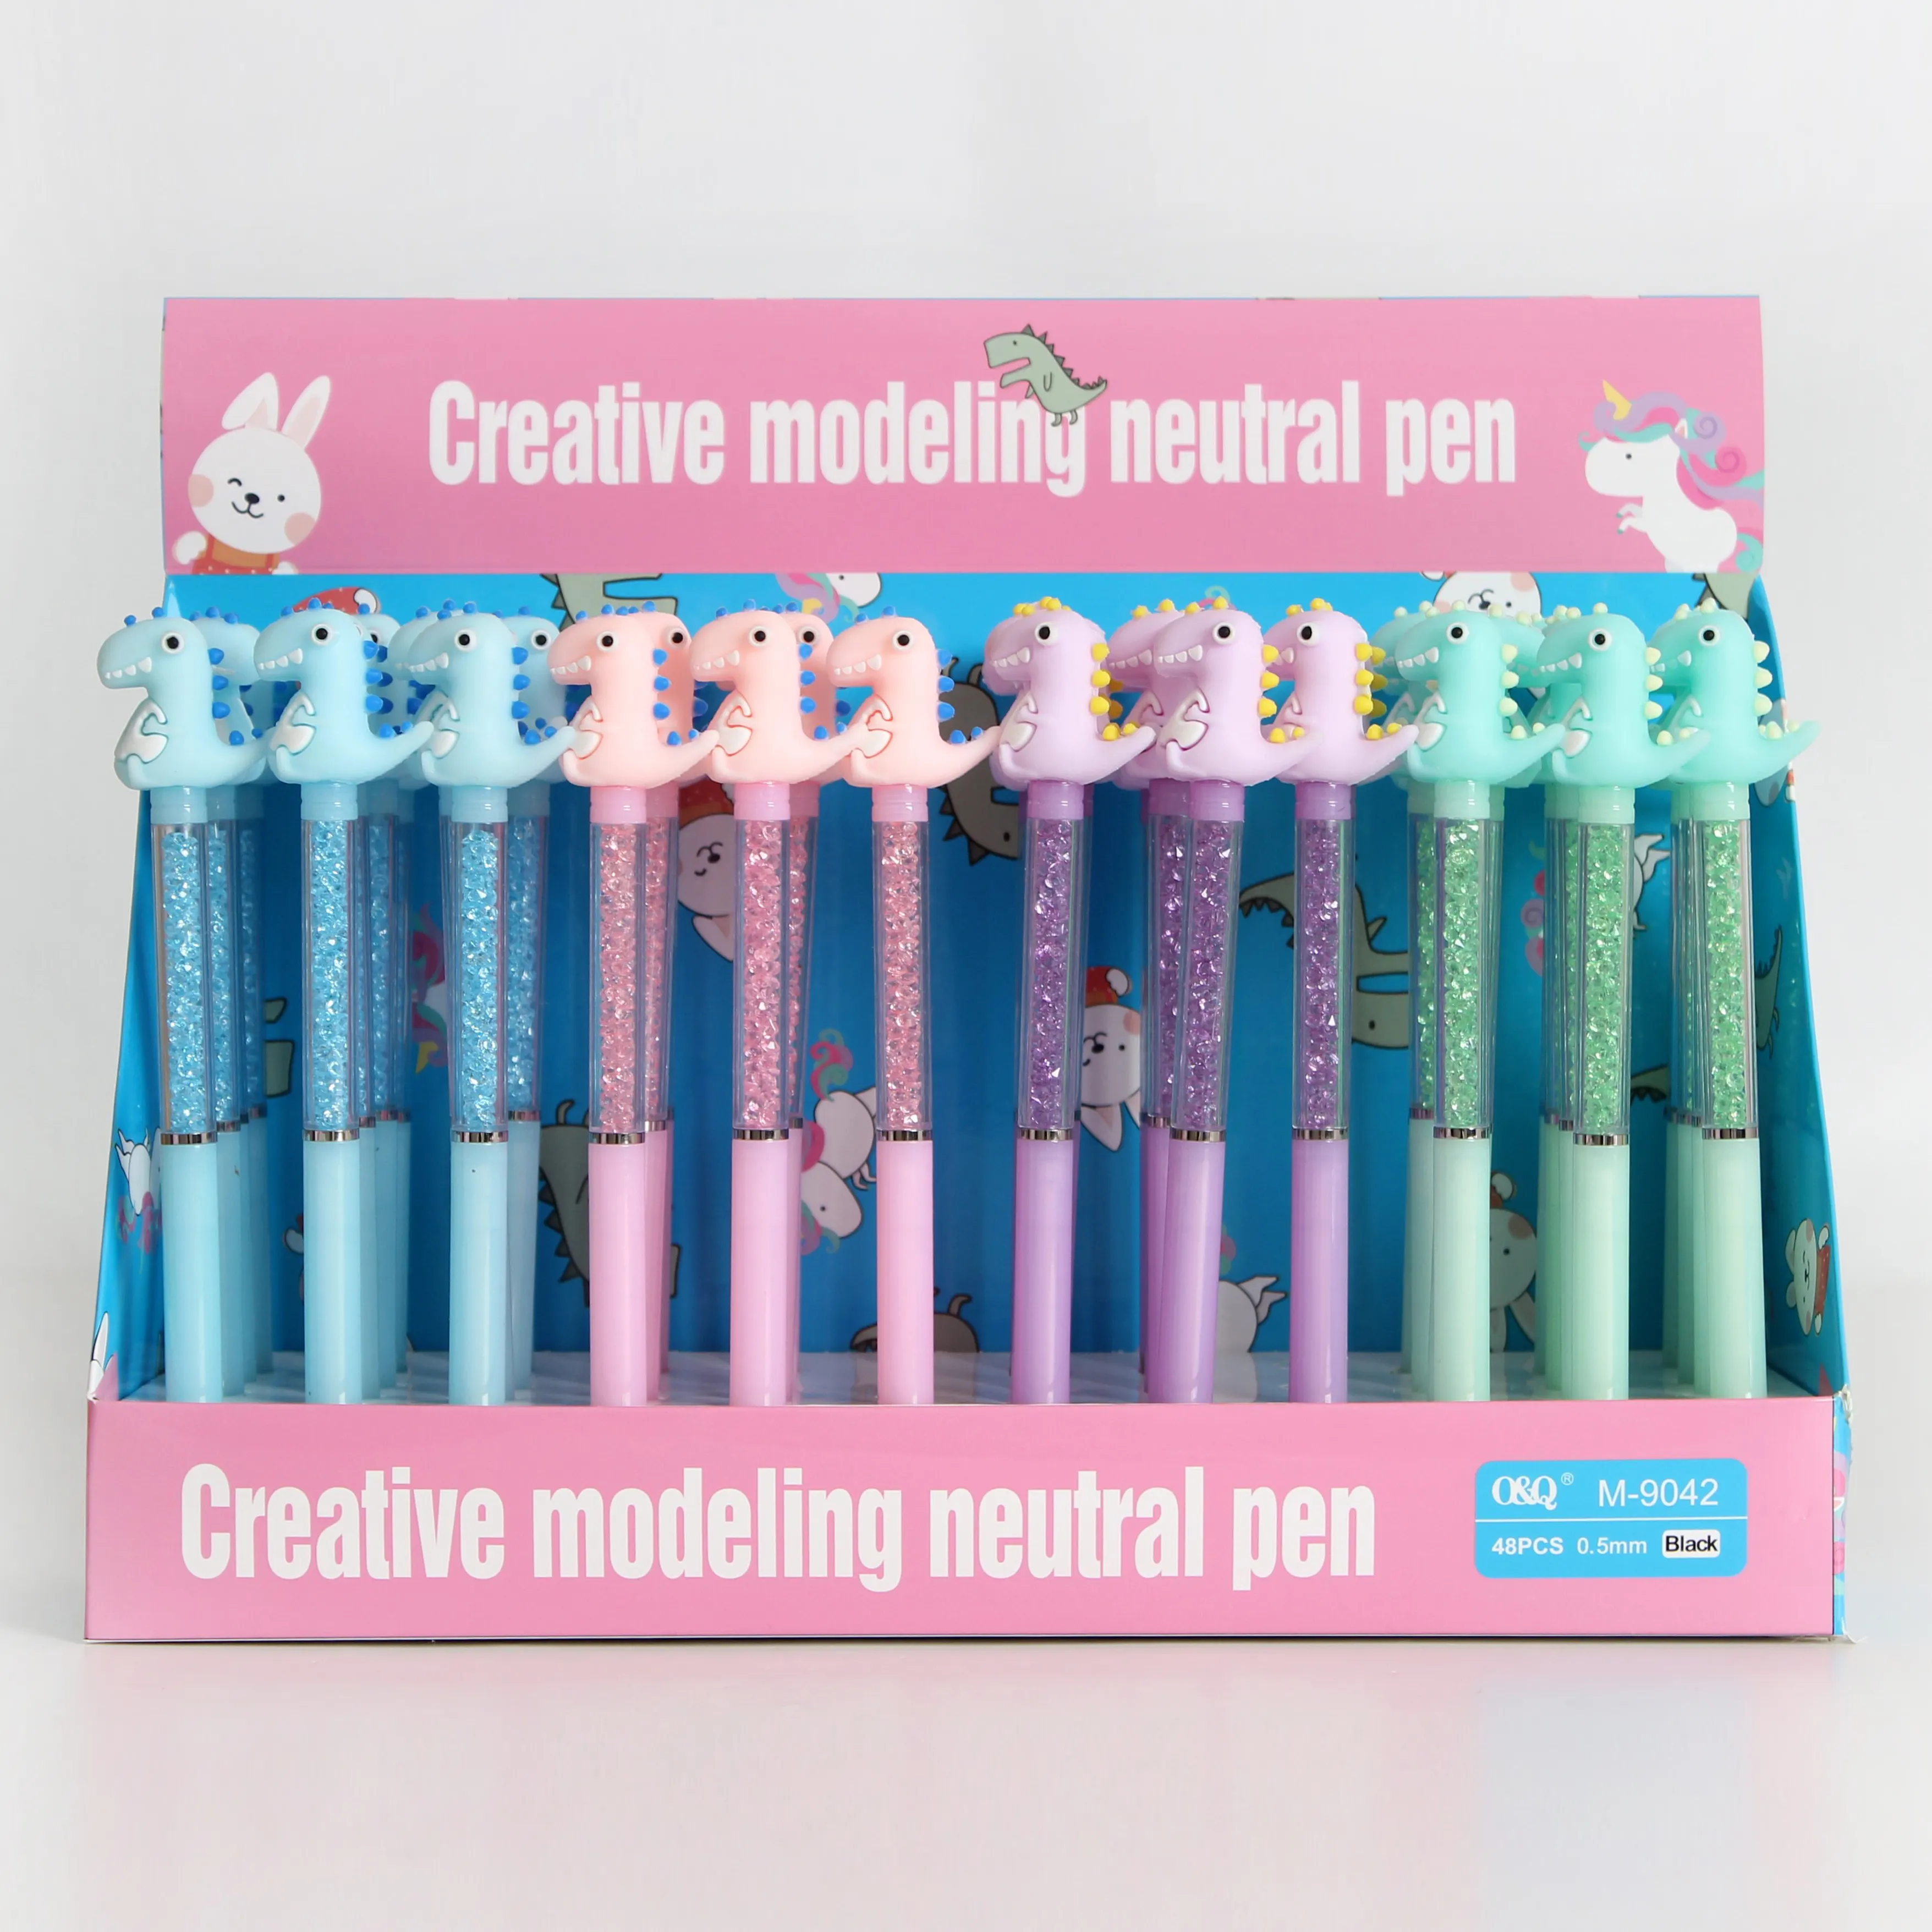 O & Q оптовая продажа ручка с блестками Хрустальный держатель для ручки с динозаврами шариковые ручки синий и черный 0,5 мм для подарка школьные канцелярские принадлежности поставщиков